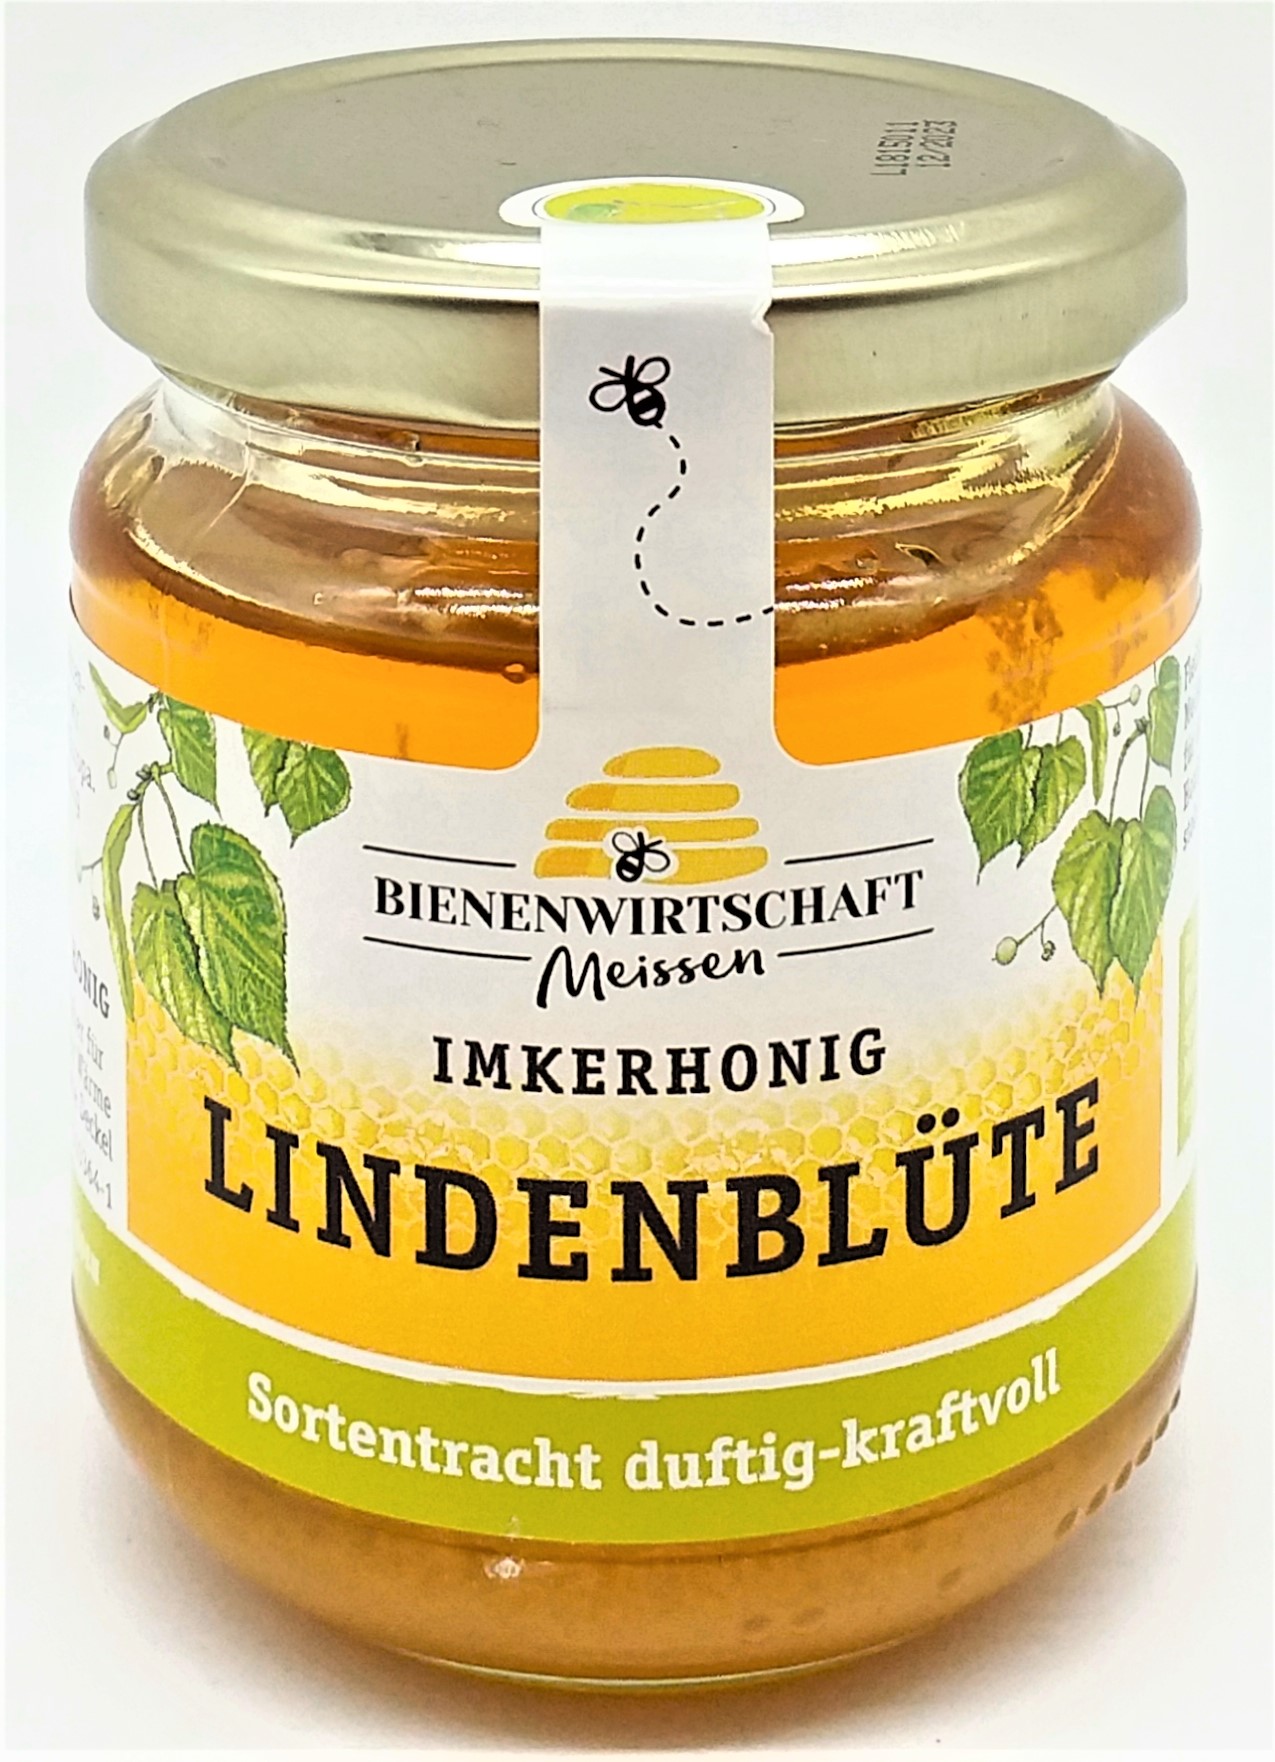 Bienenwirtschaft Meissen Imkerhonig Lindenblüte 250g